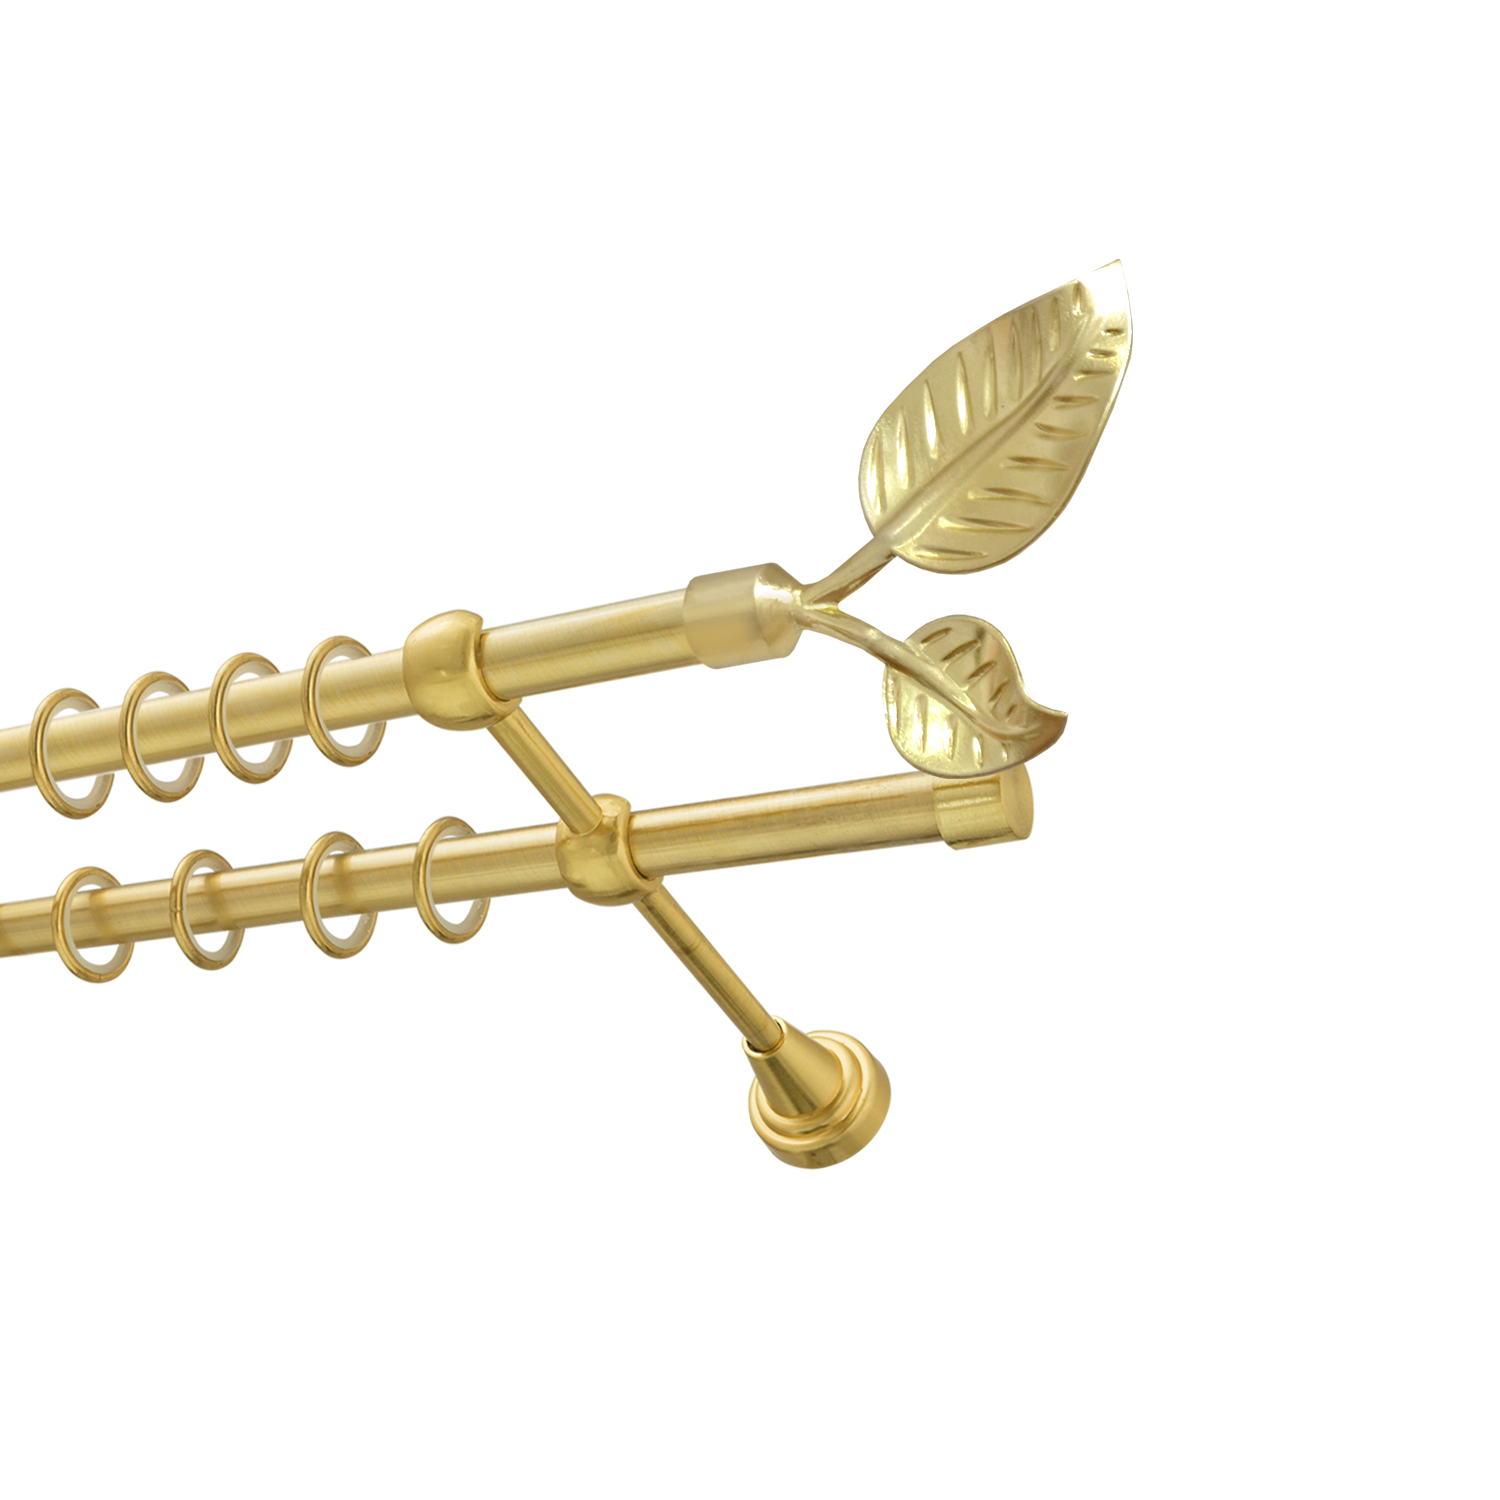 Металлический карниз для штор Тропик, двухрядный 16/16 мм, золото, гладкая штанга, длина 140 см - фото Wikidecor.ru